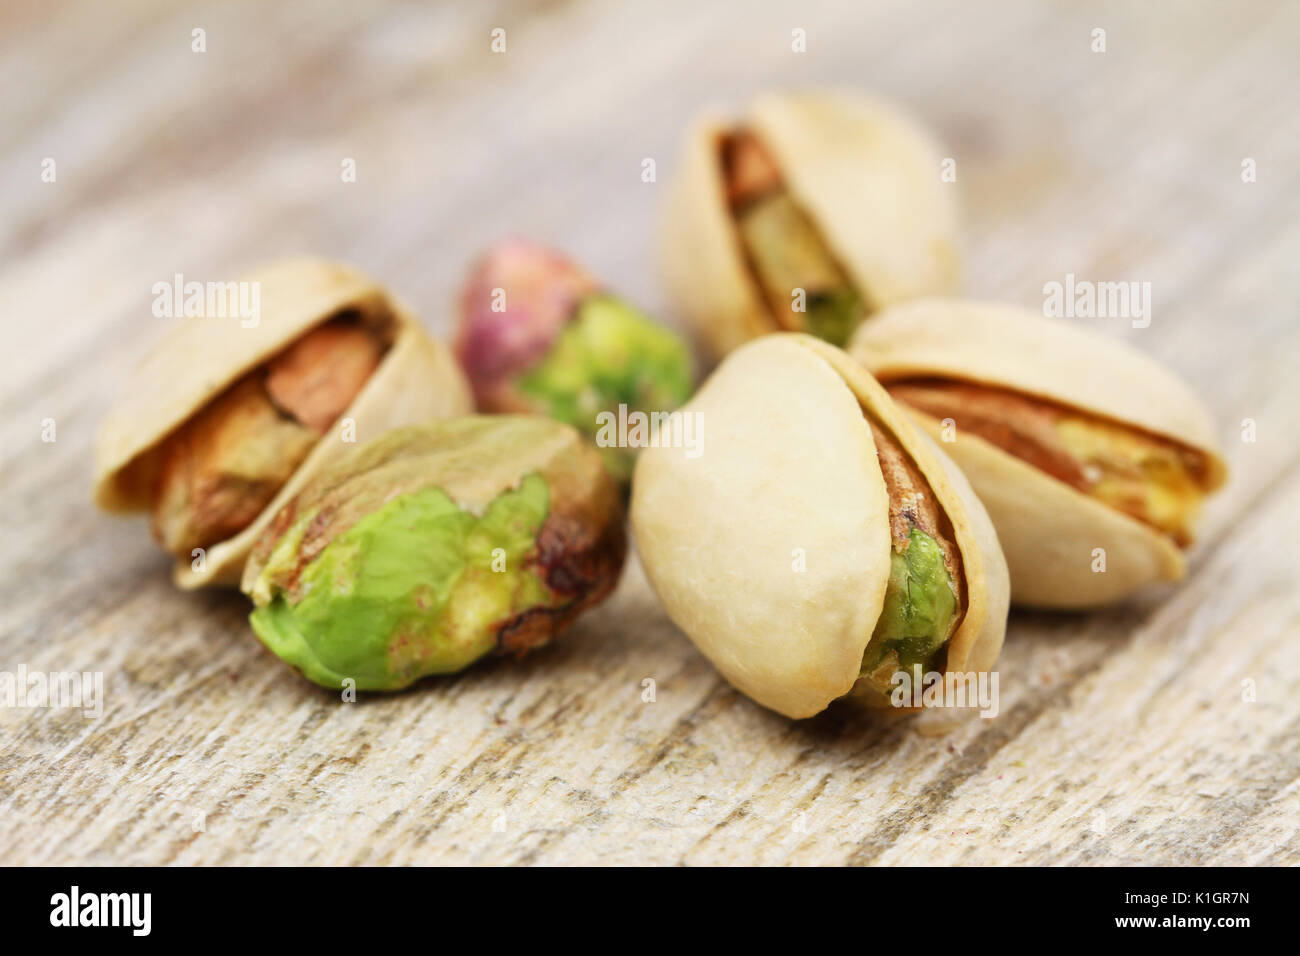 Los pistachos con y sin cáscara, closeup Foto de stock